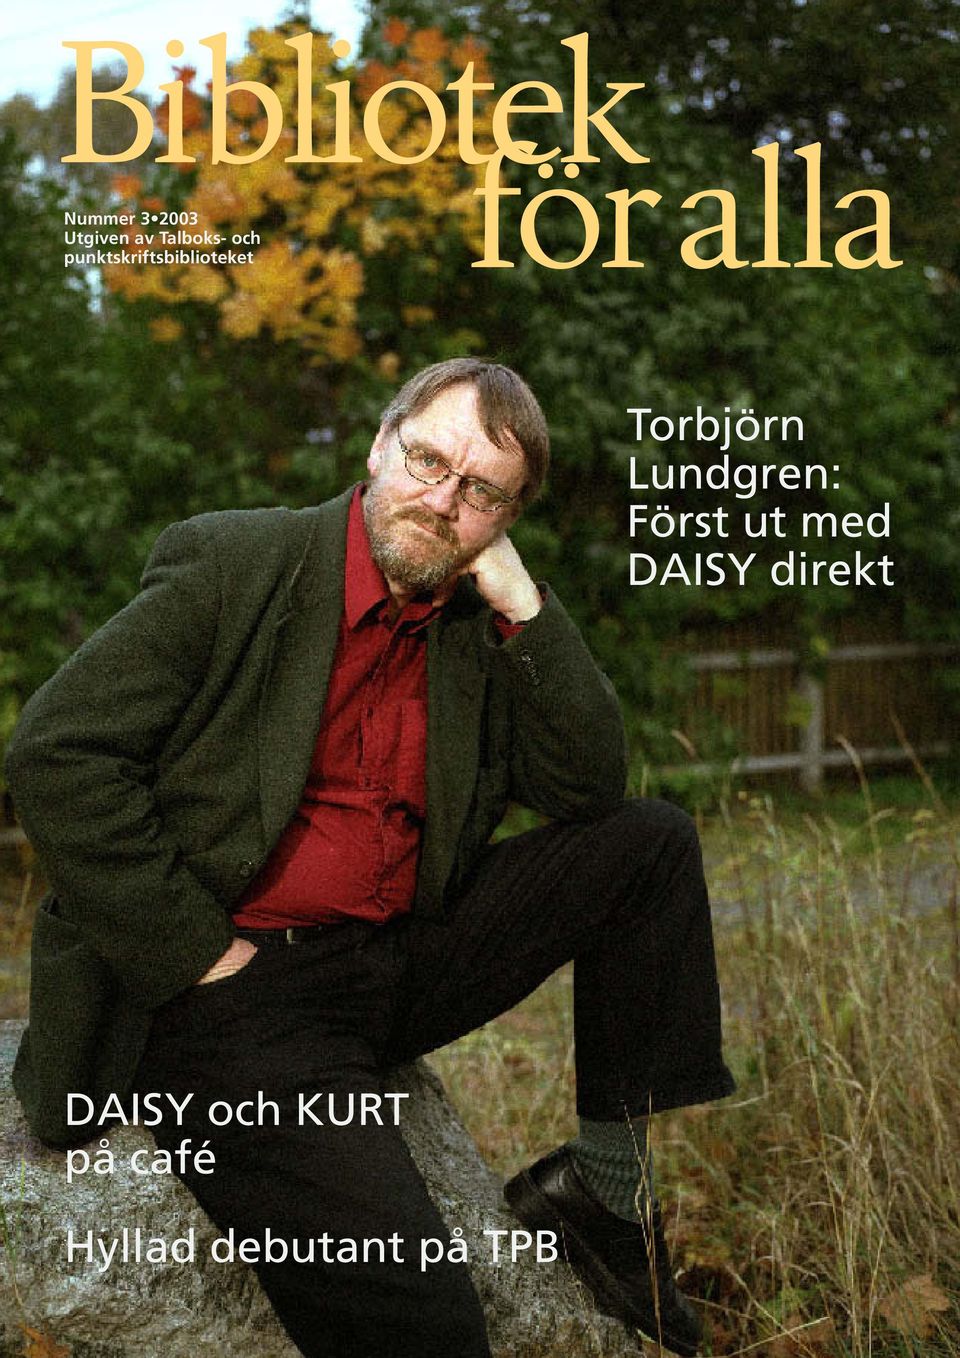 Torbjörn Lundgren: Först ut med DAISY